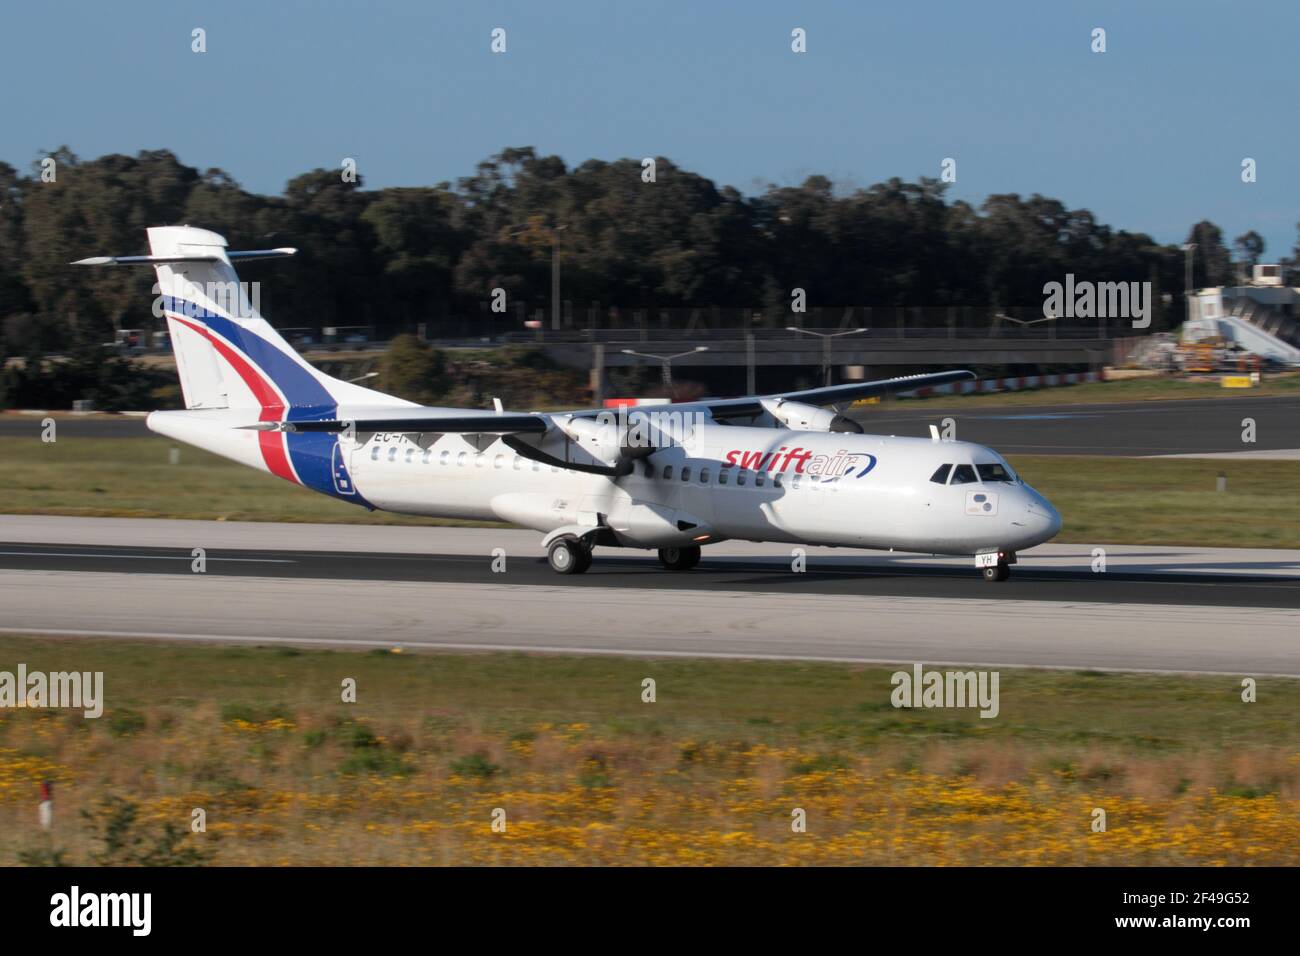 Swiftair ATR 72 propulsó el avión de carga en la pista mientras partía de Malta. Avión comercial turbo. Foto de stock